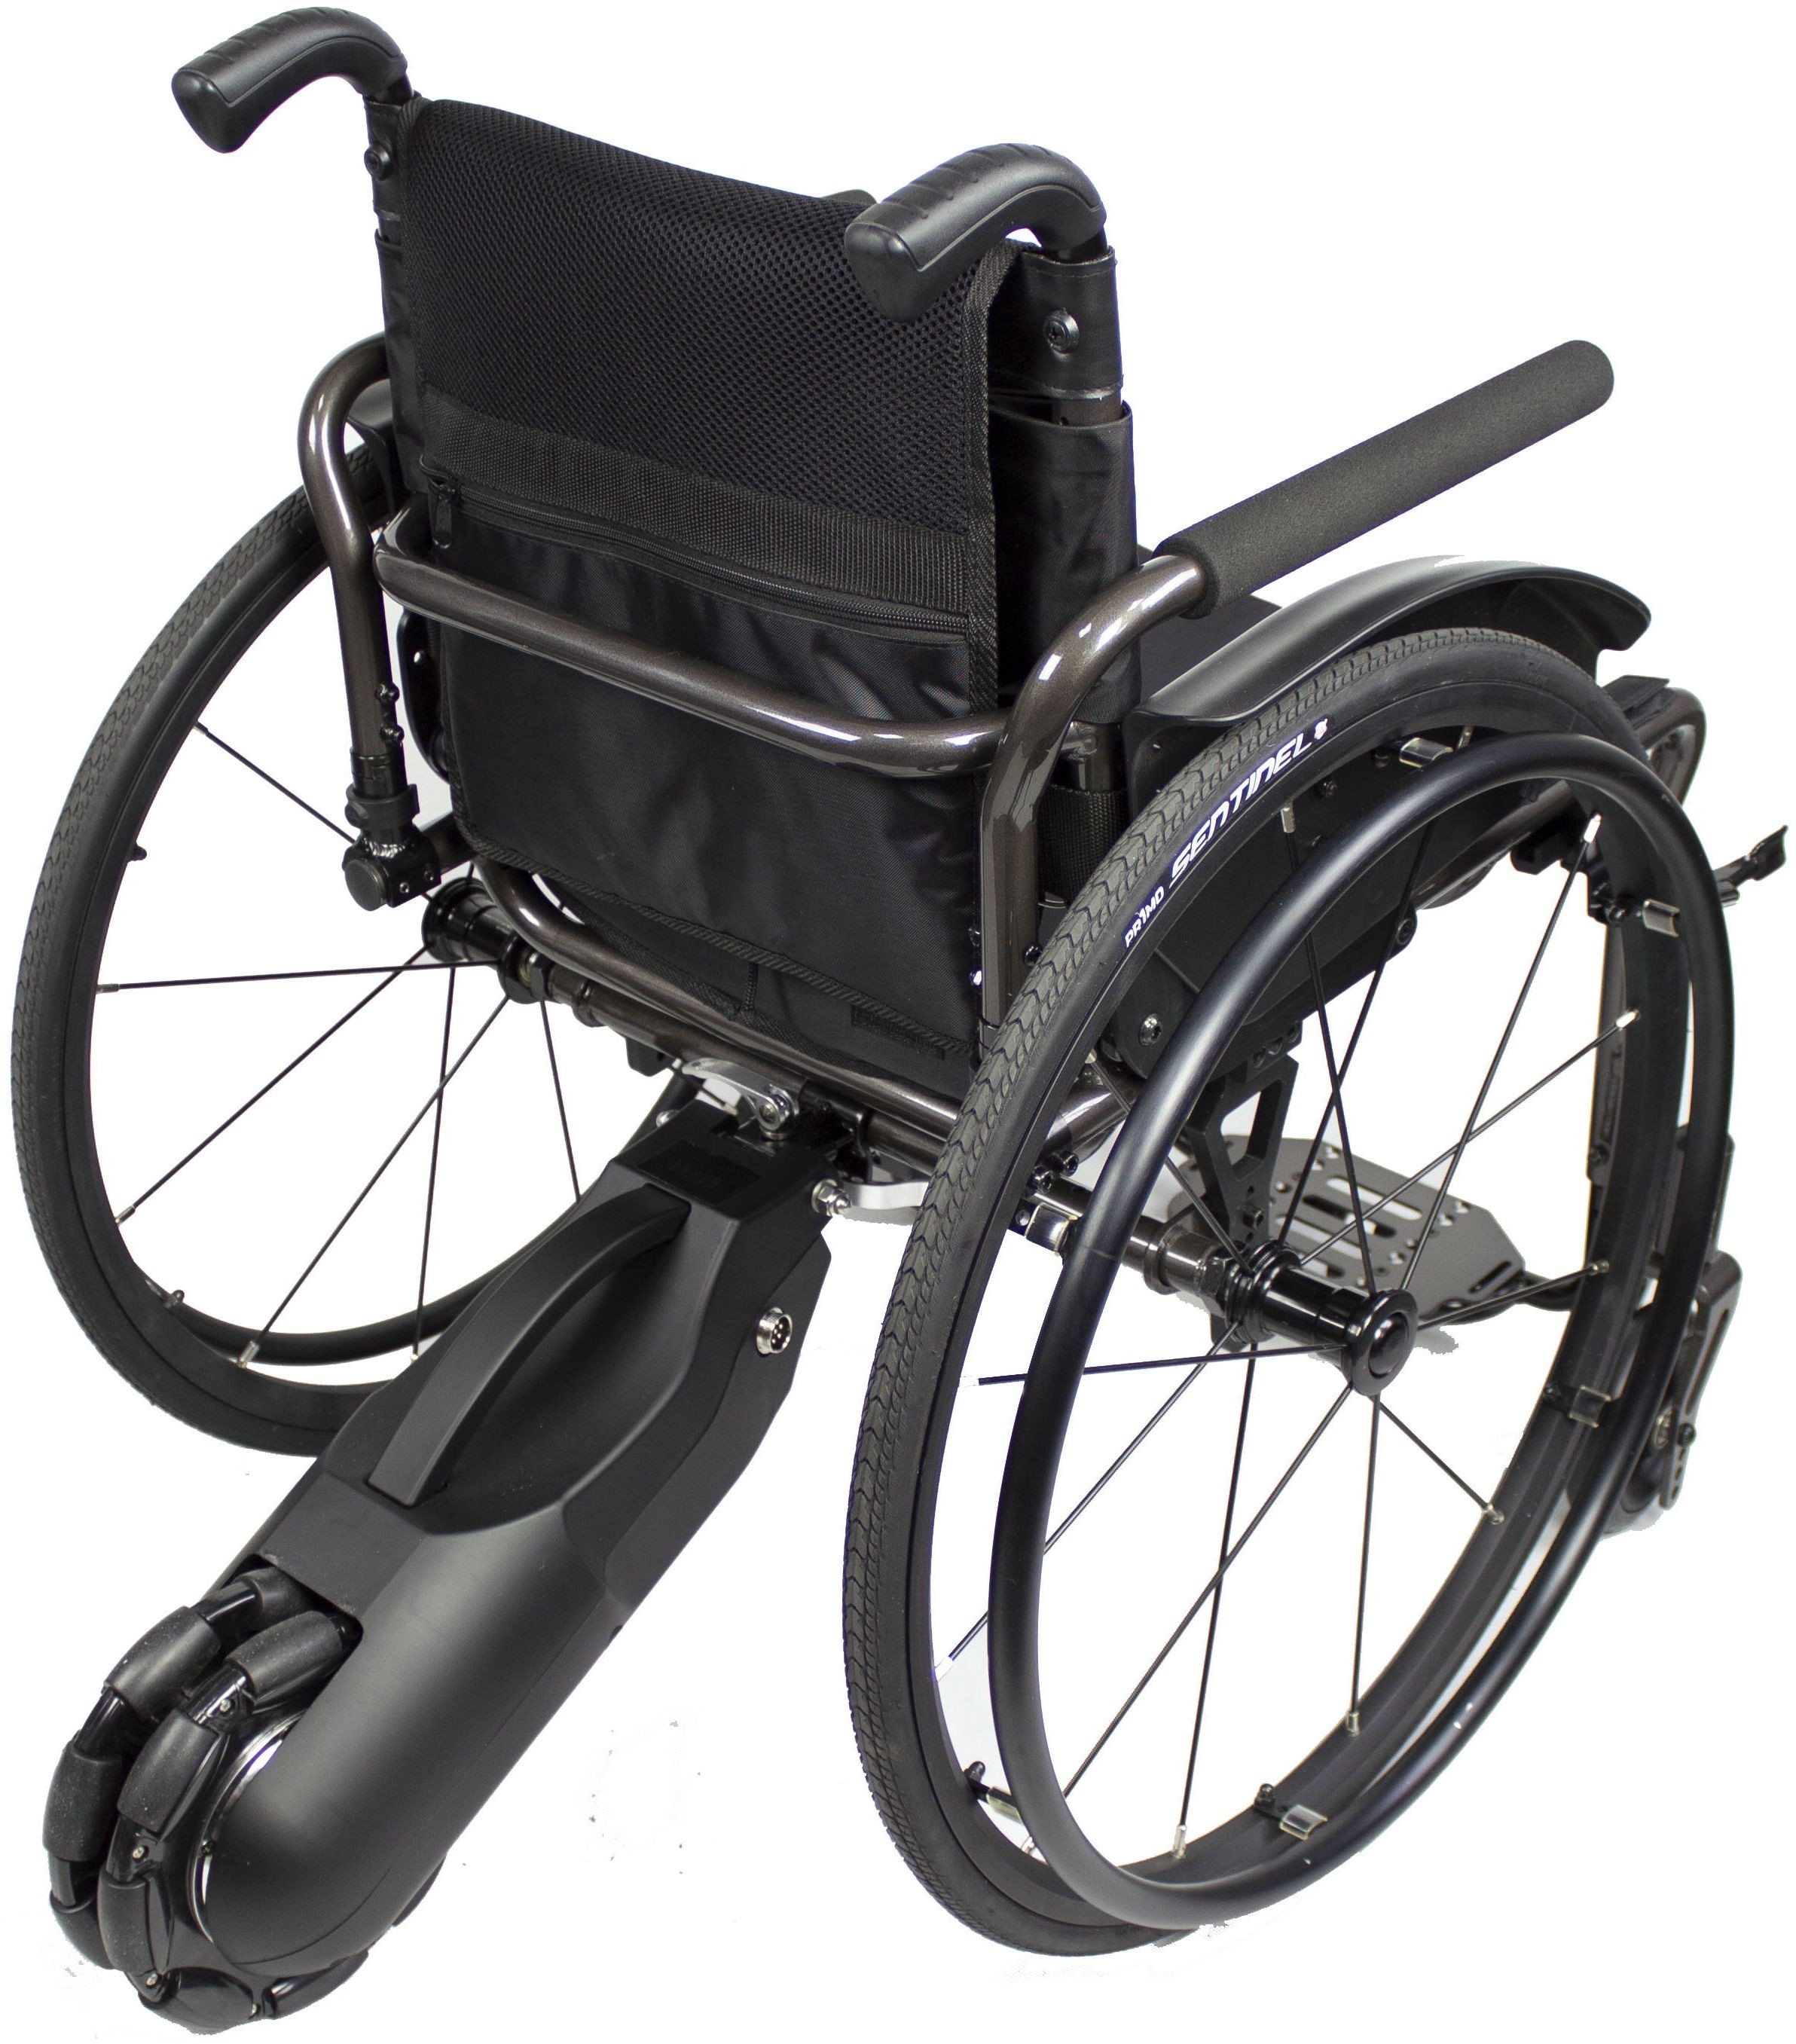 Vitea Care Dostawka elektryczna do wózka inwalidzkiego aktywnego - lekka o kompaktowych rozmiarach - napęd tylny wspomagający poruszanie wózkiem WAY